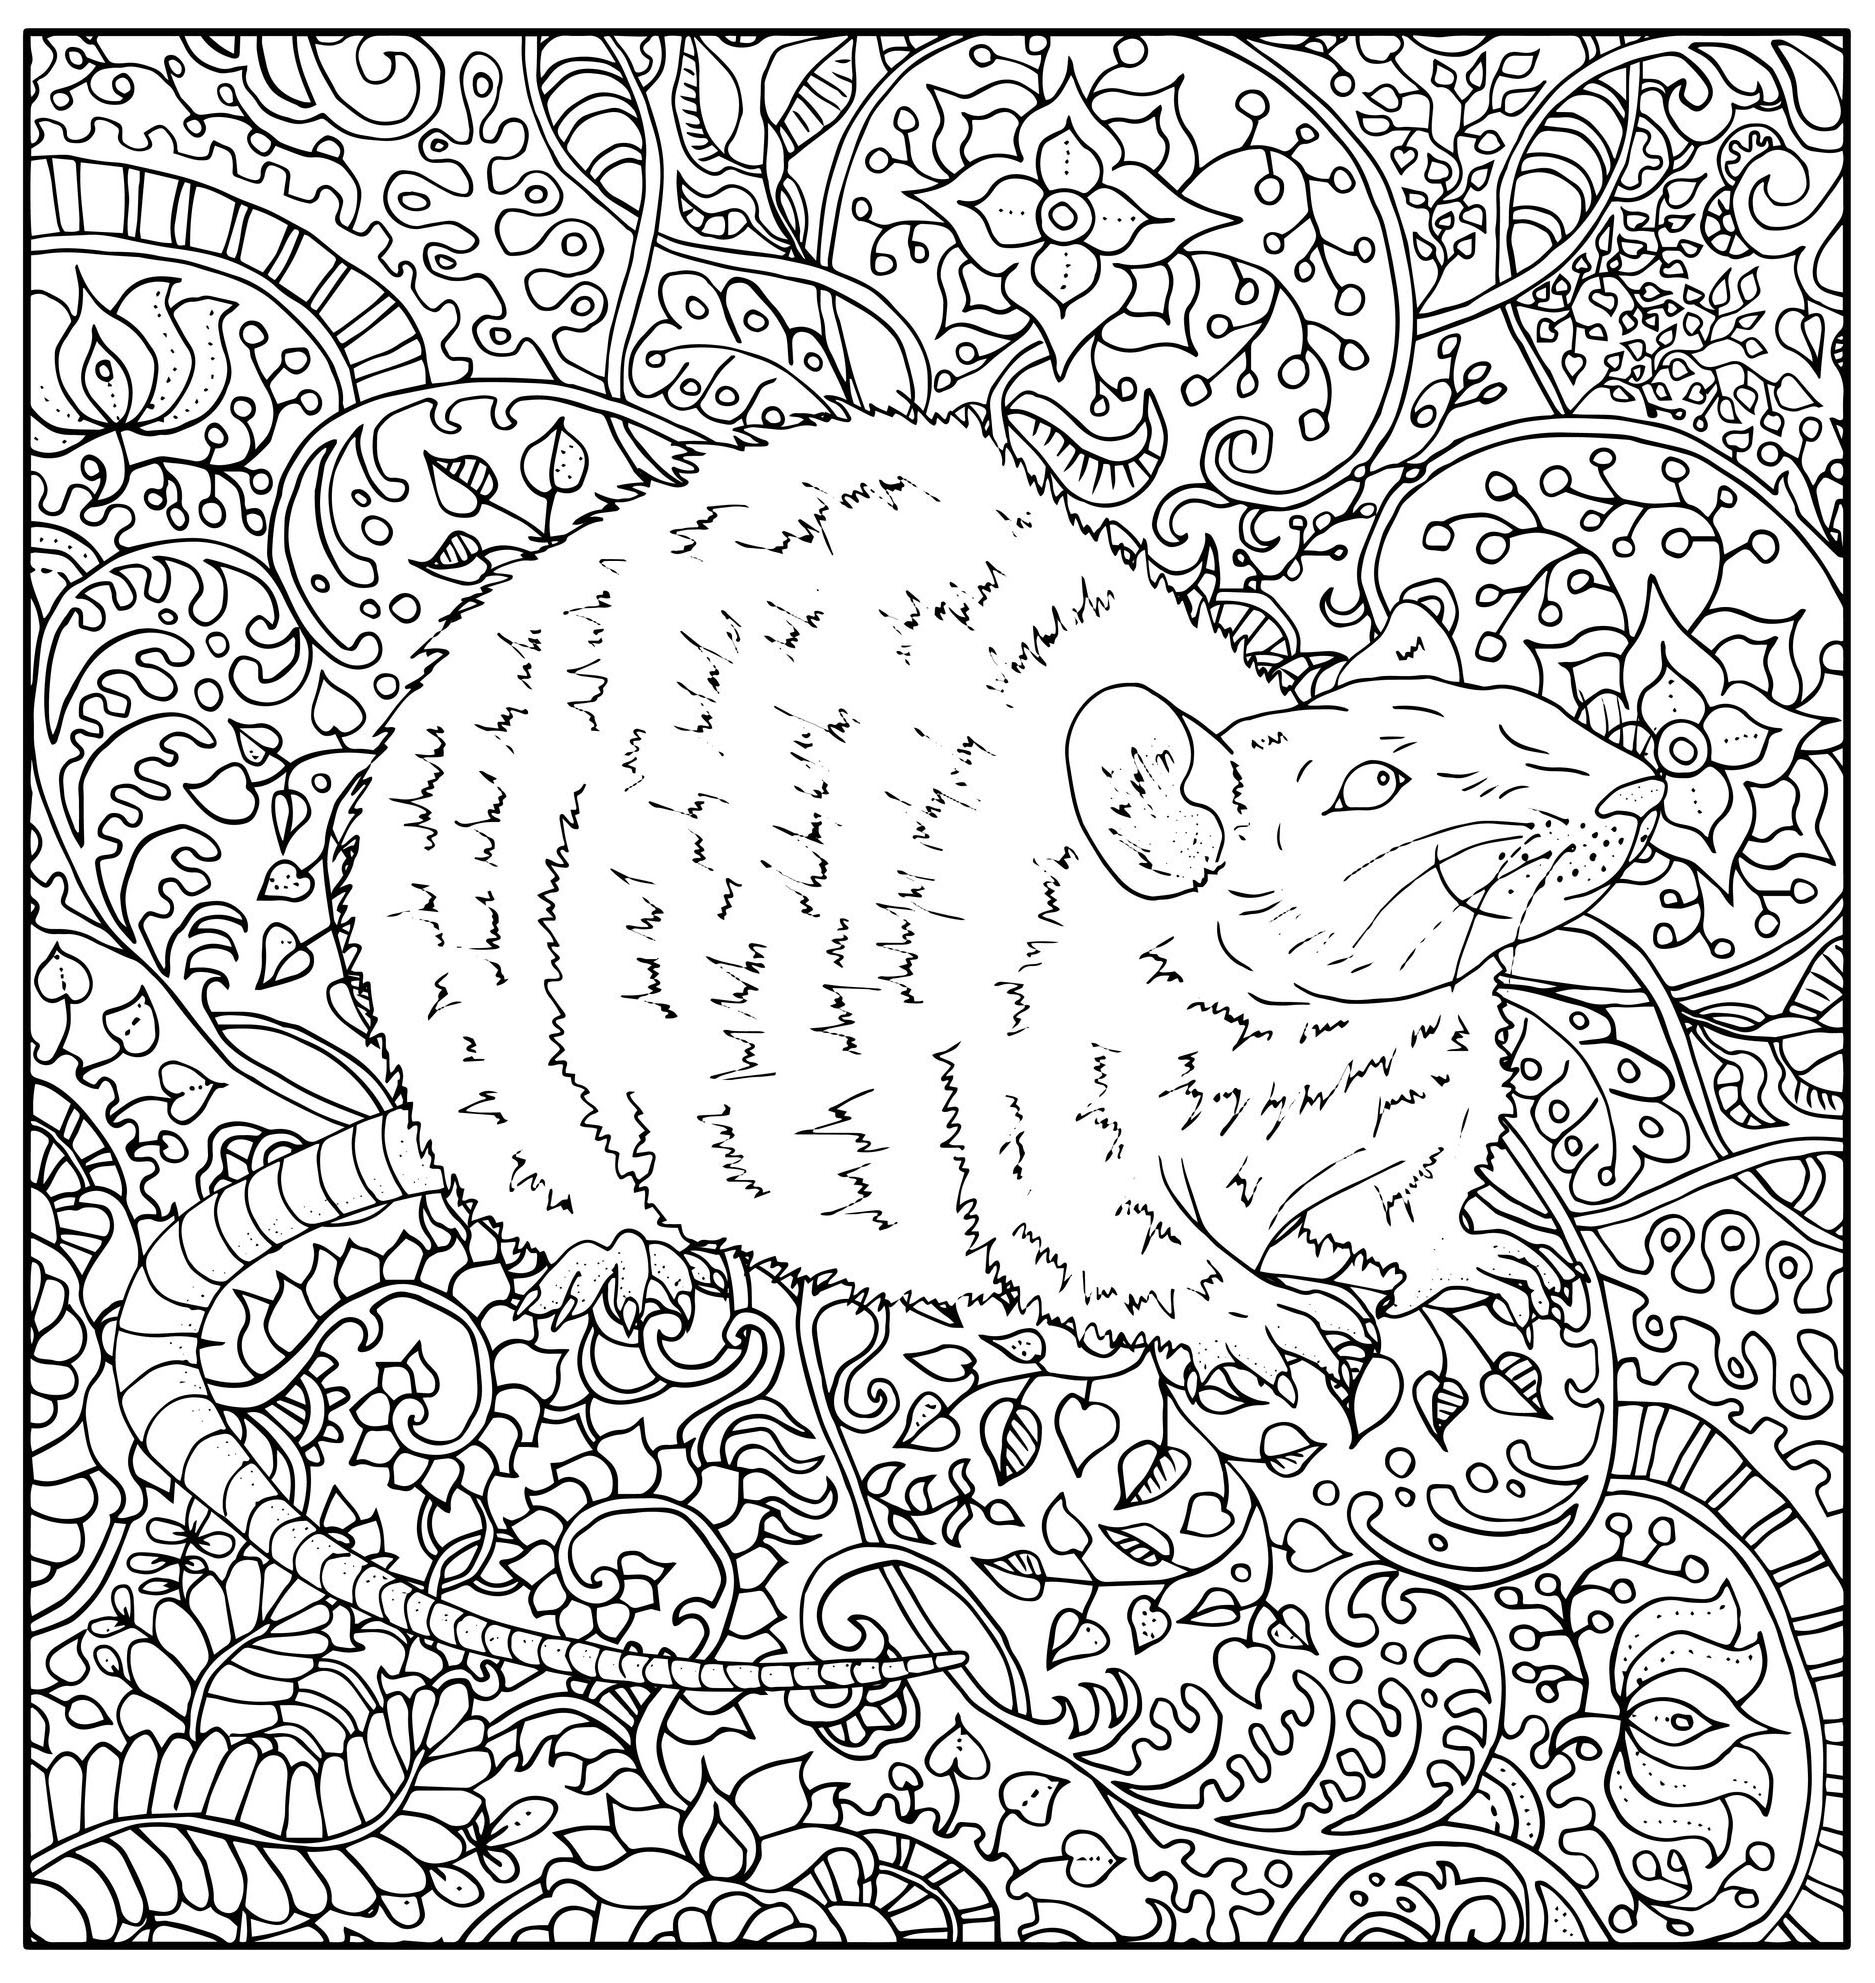 Página para colorear que representa una rata dibujada de forma realista con diversos motivos vegetales abstractos, Origen : 123rf   Artista : Vera Petruk